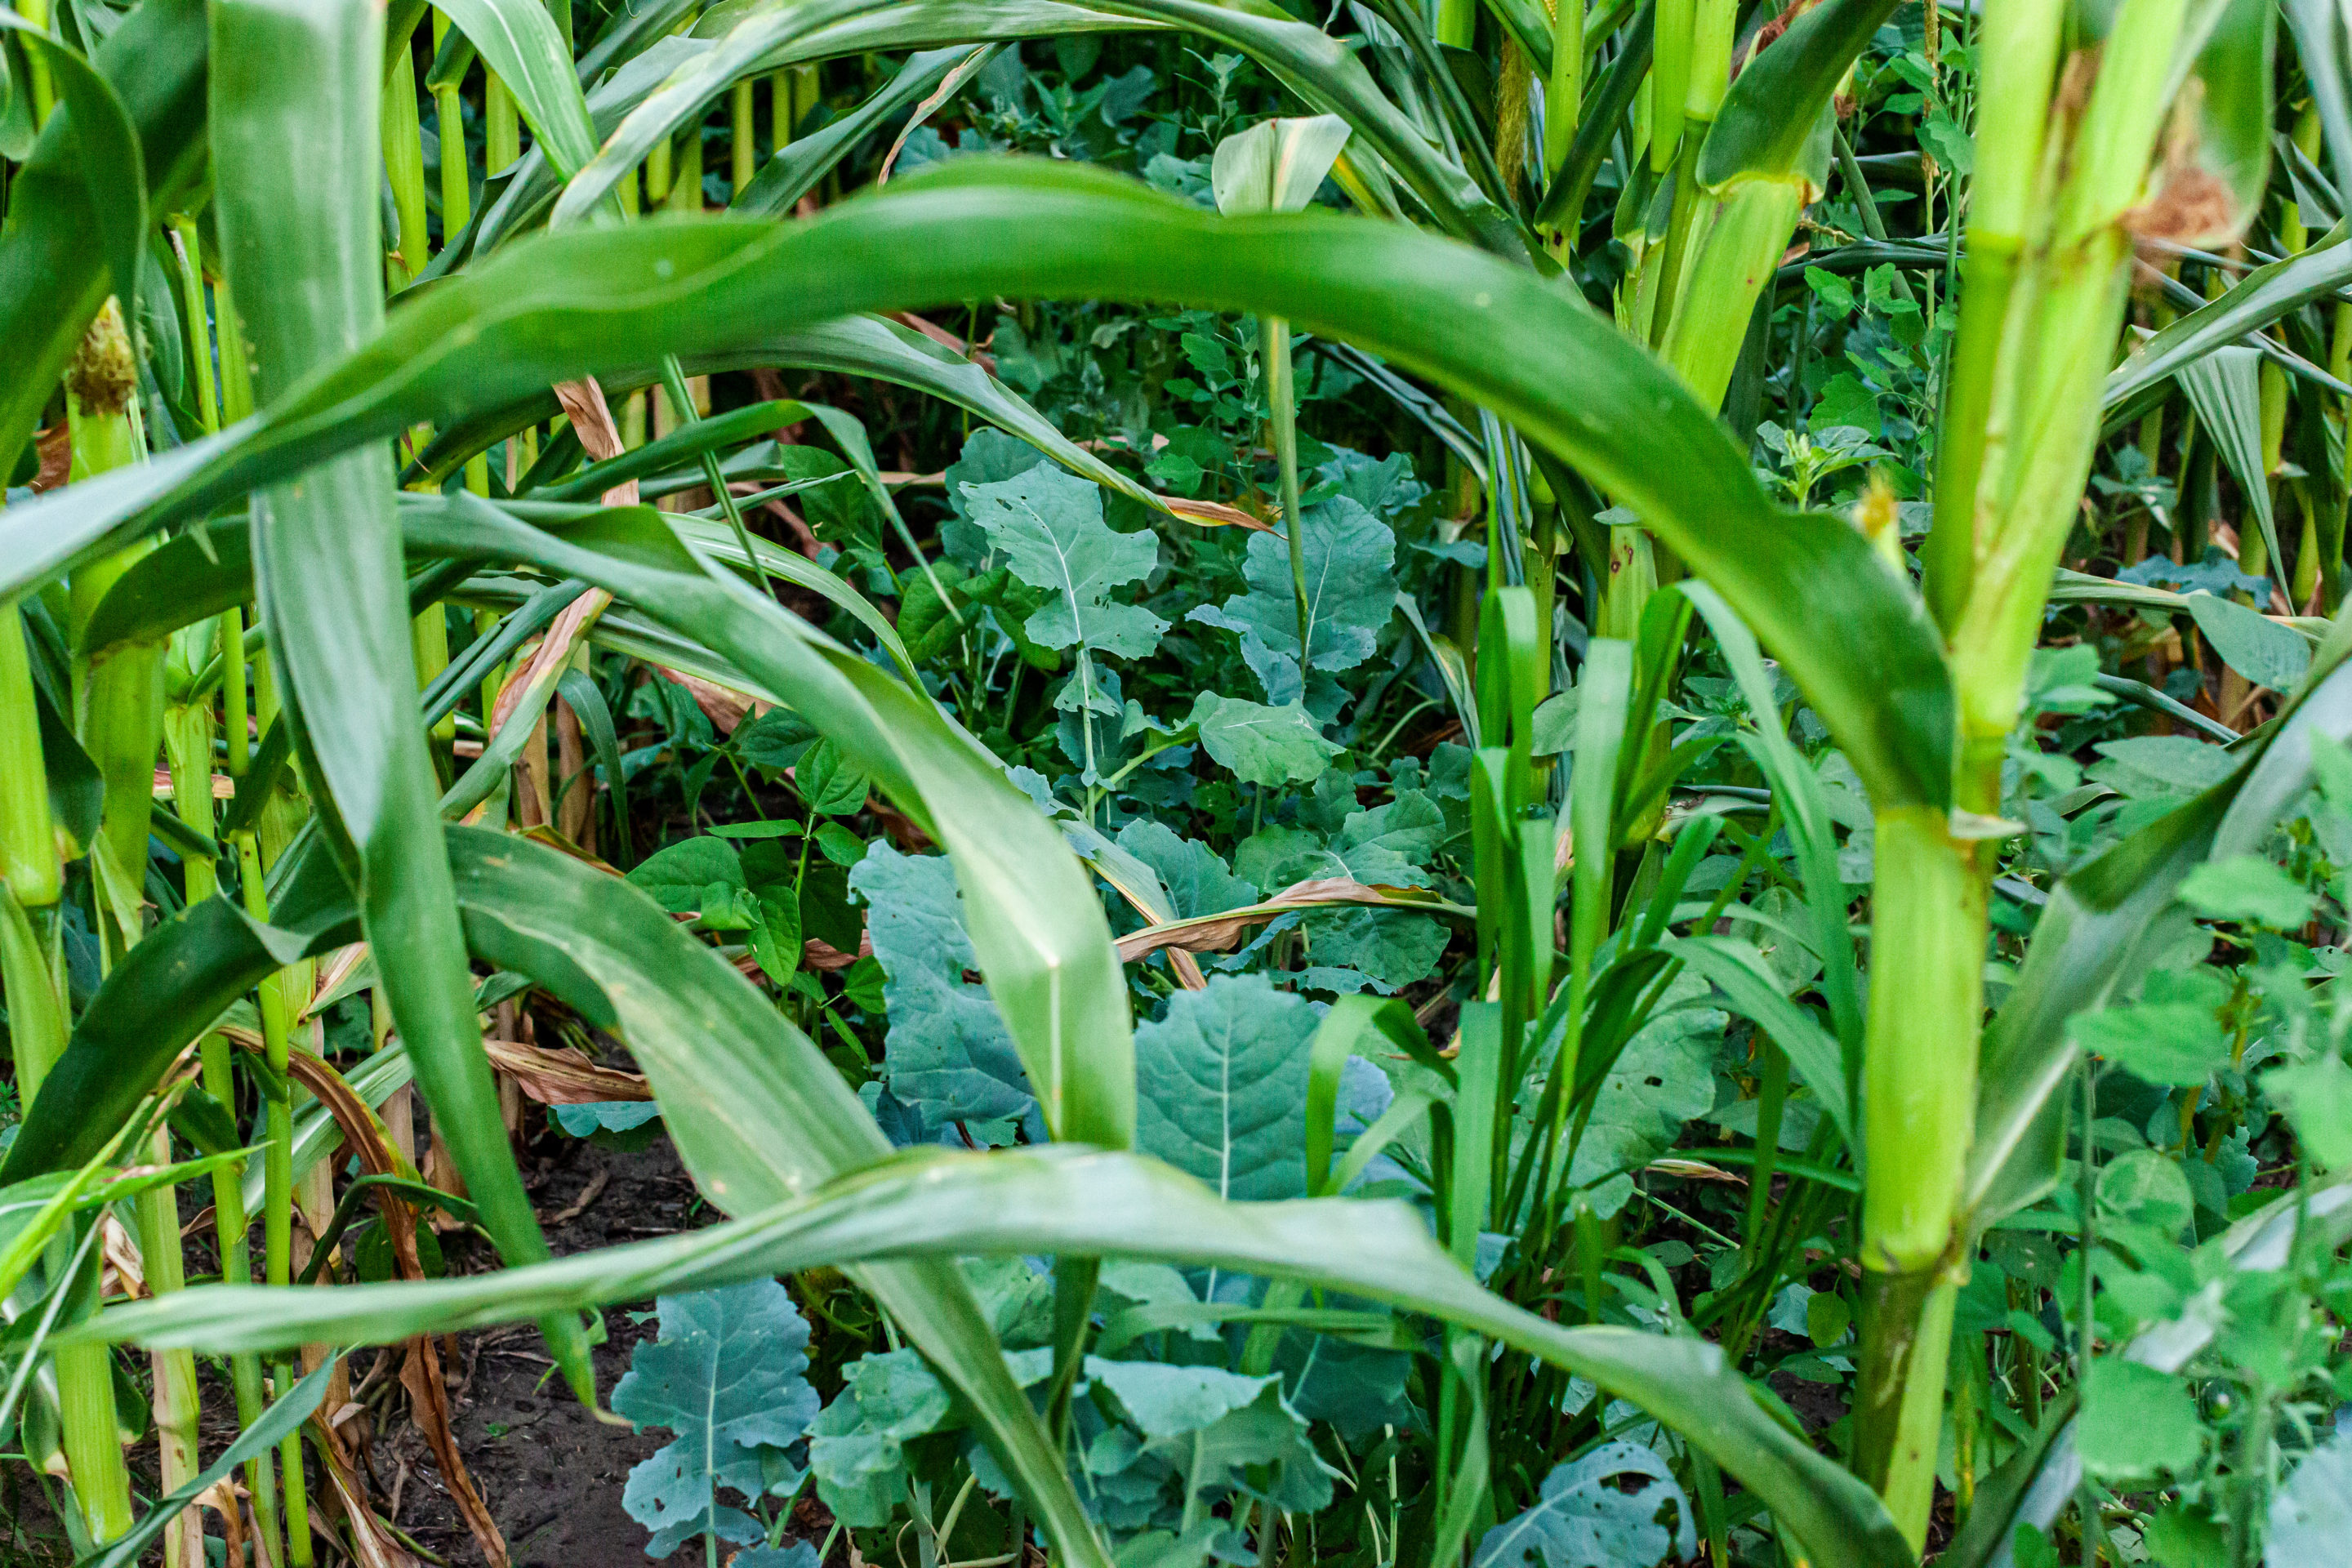 Cover crops inter-seeded between rows of field corn in regenerat